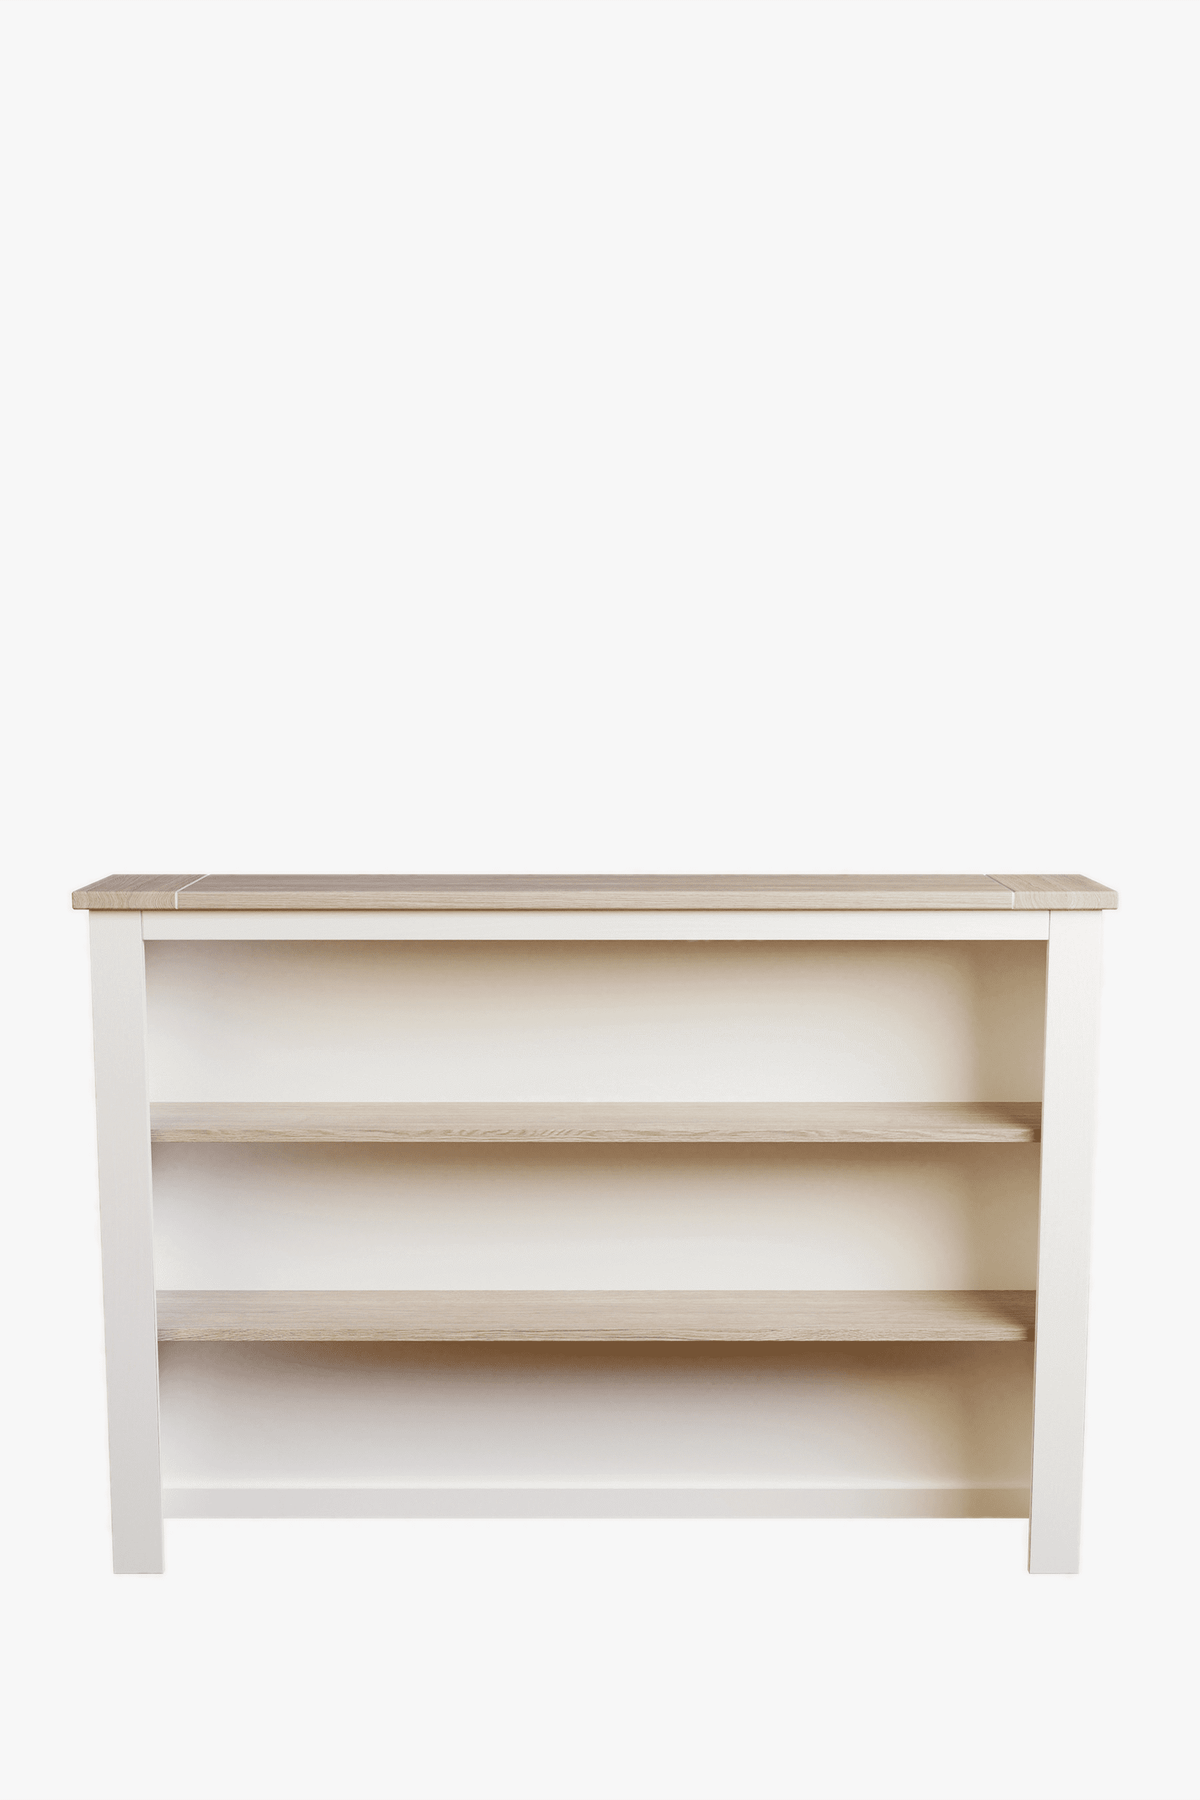 Dorset Dresser Top for 2 Door 3 Drawer Sideboard